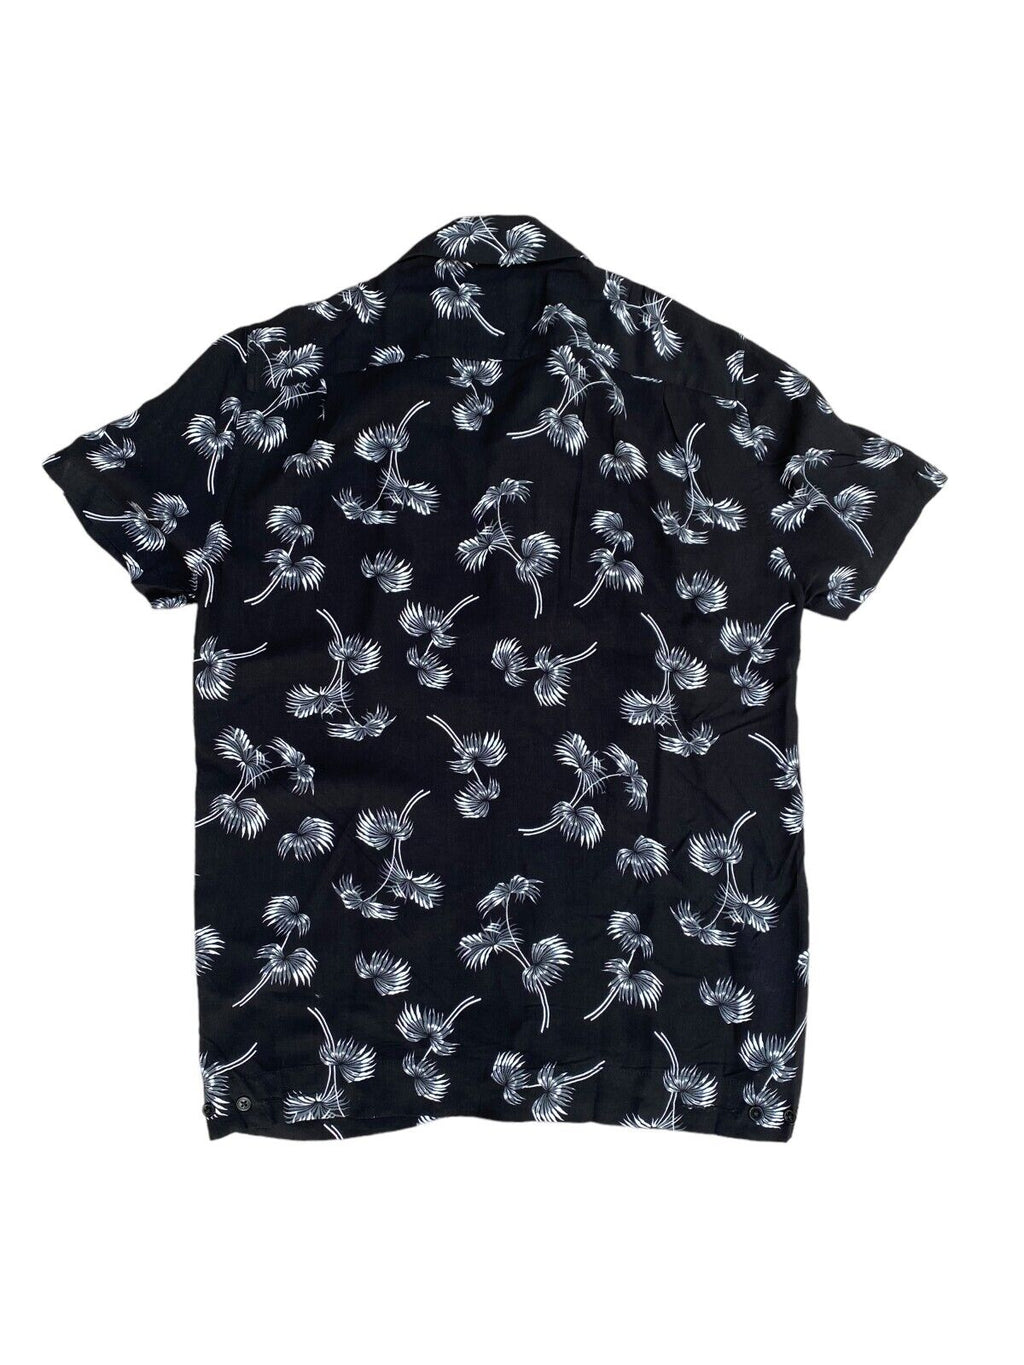 Black Hawaiian shirt